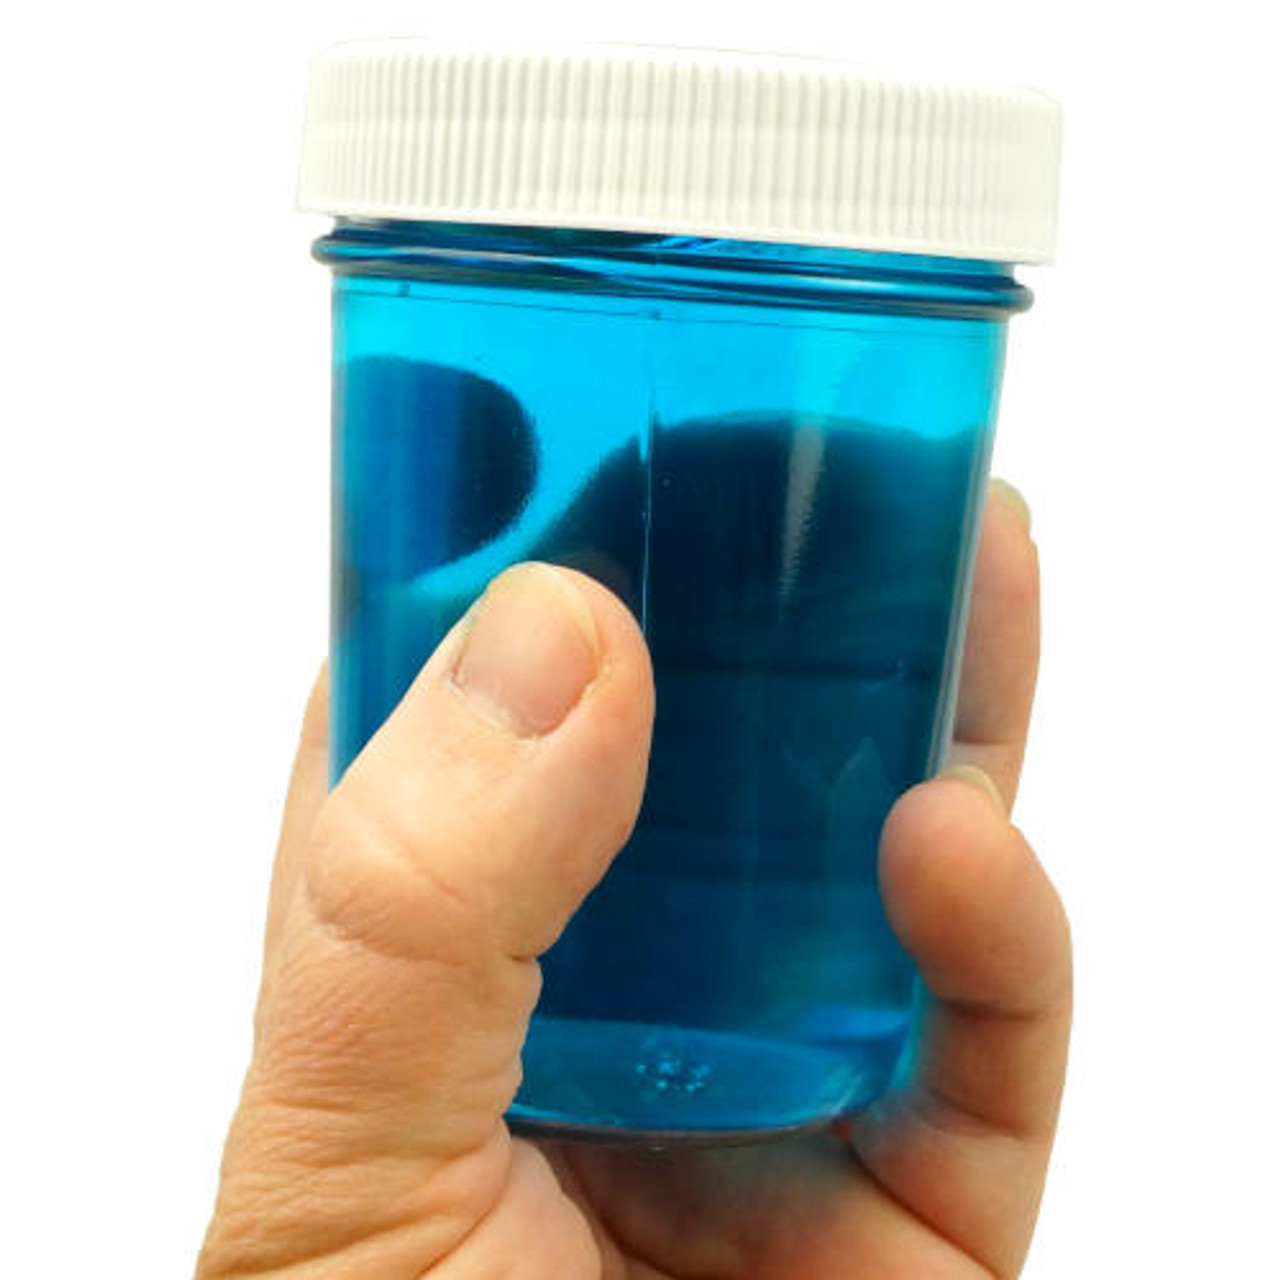 8 oz Flint Glass Jelly Jar, 70-450, 12x1. Pipeline Packaging